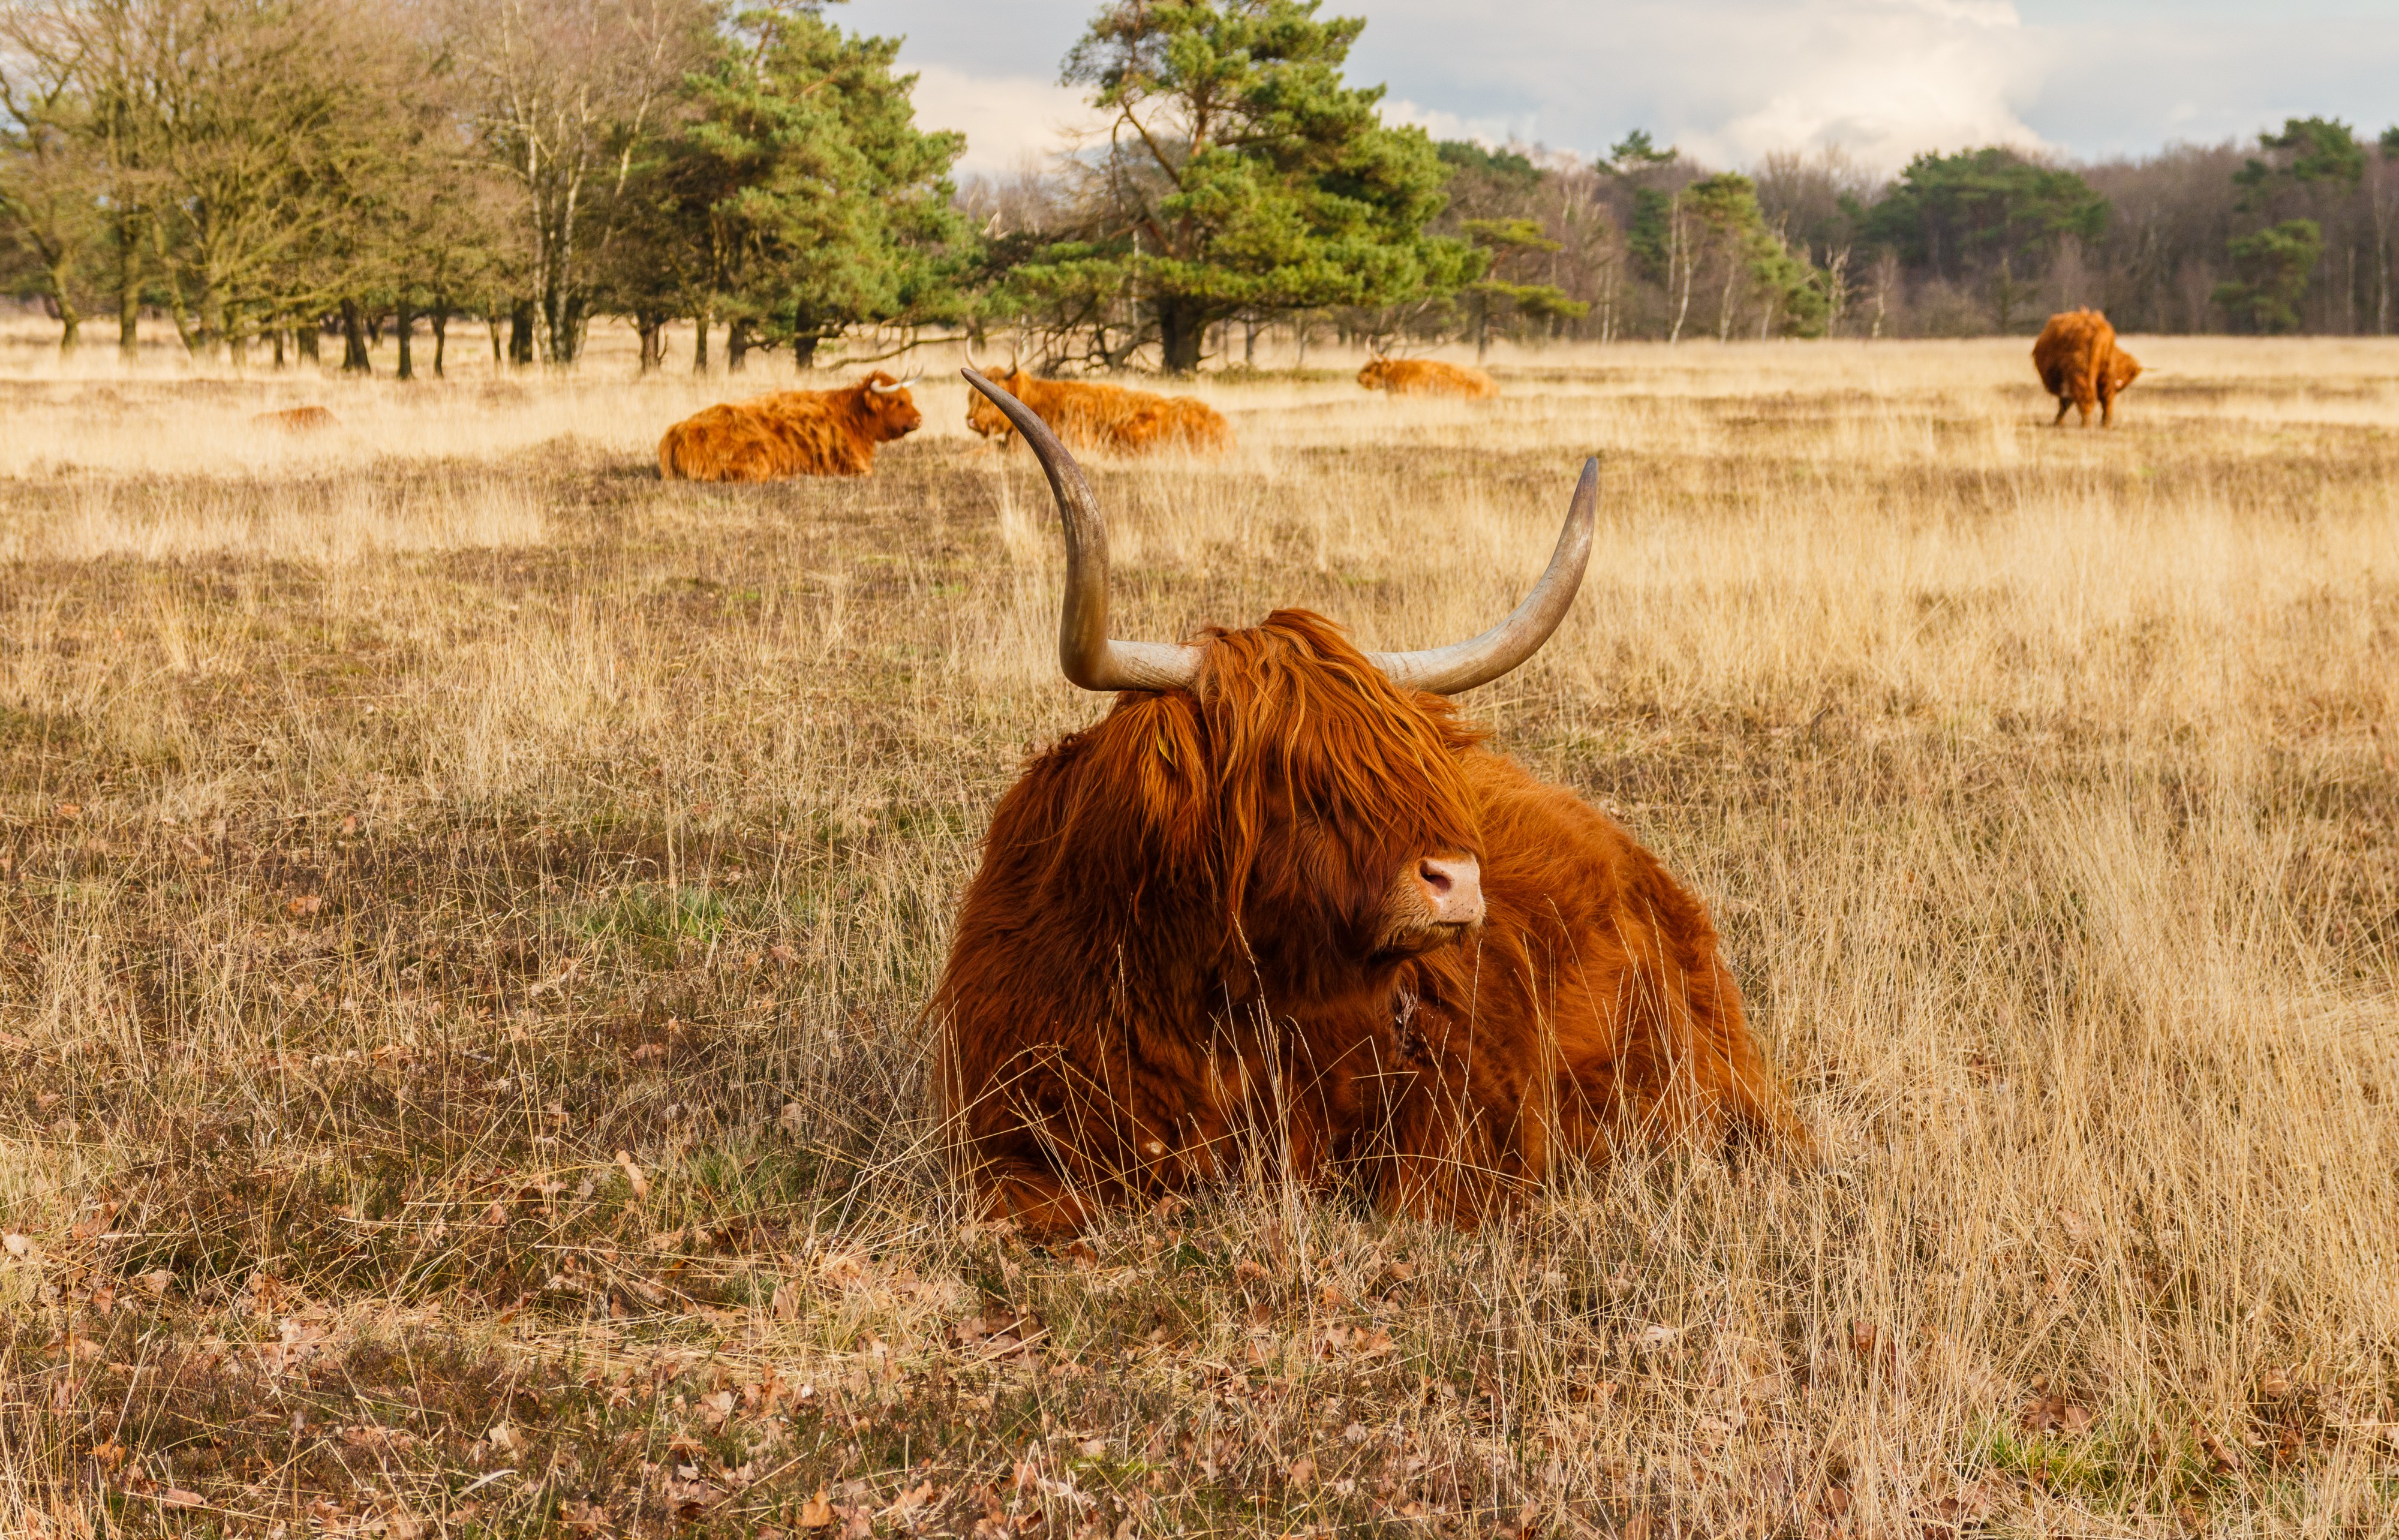 Schotse hooglanders (Highland Cow) beheren het gebied. Locatie, natuurgebied Delleboersterheide – Catspoele 03